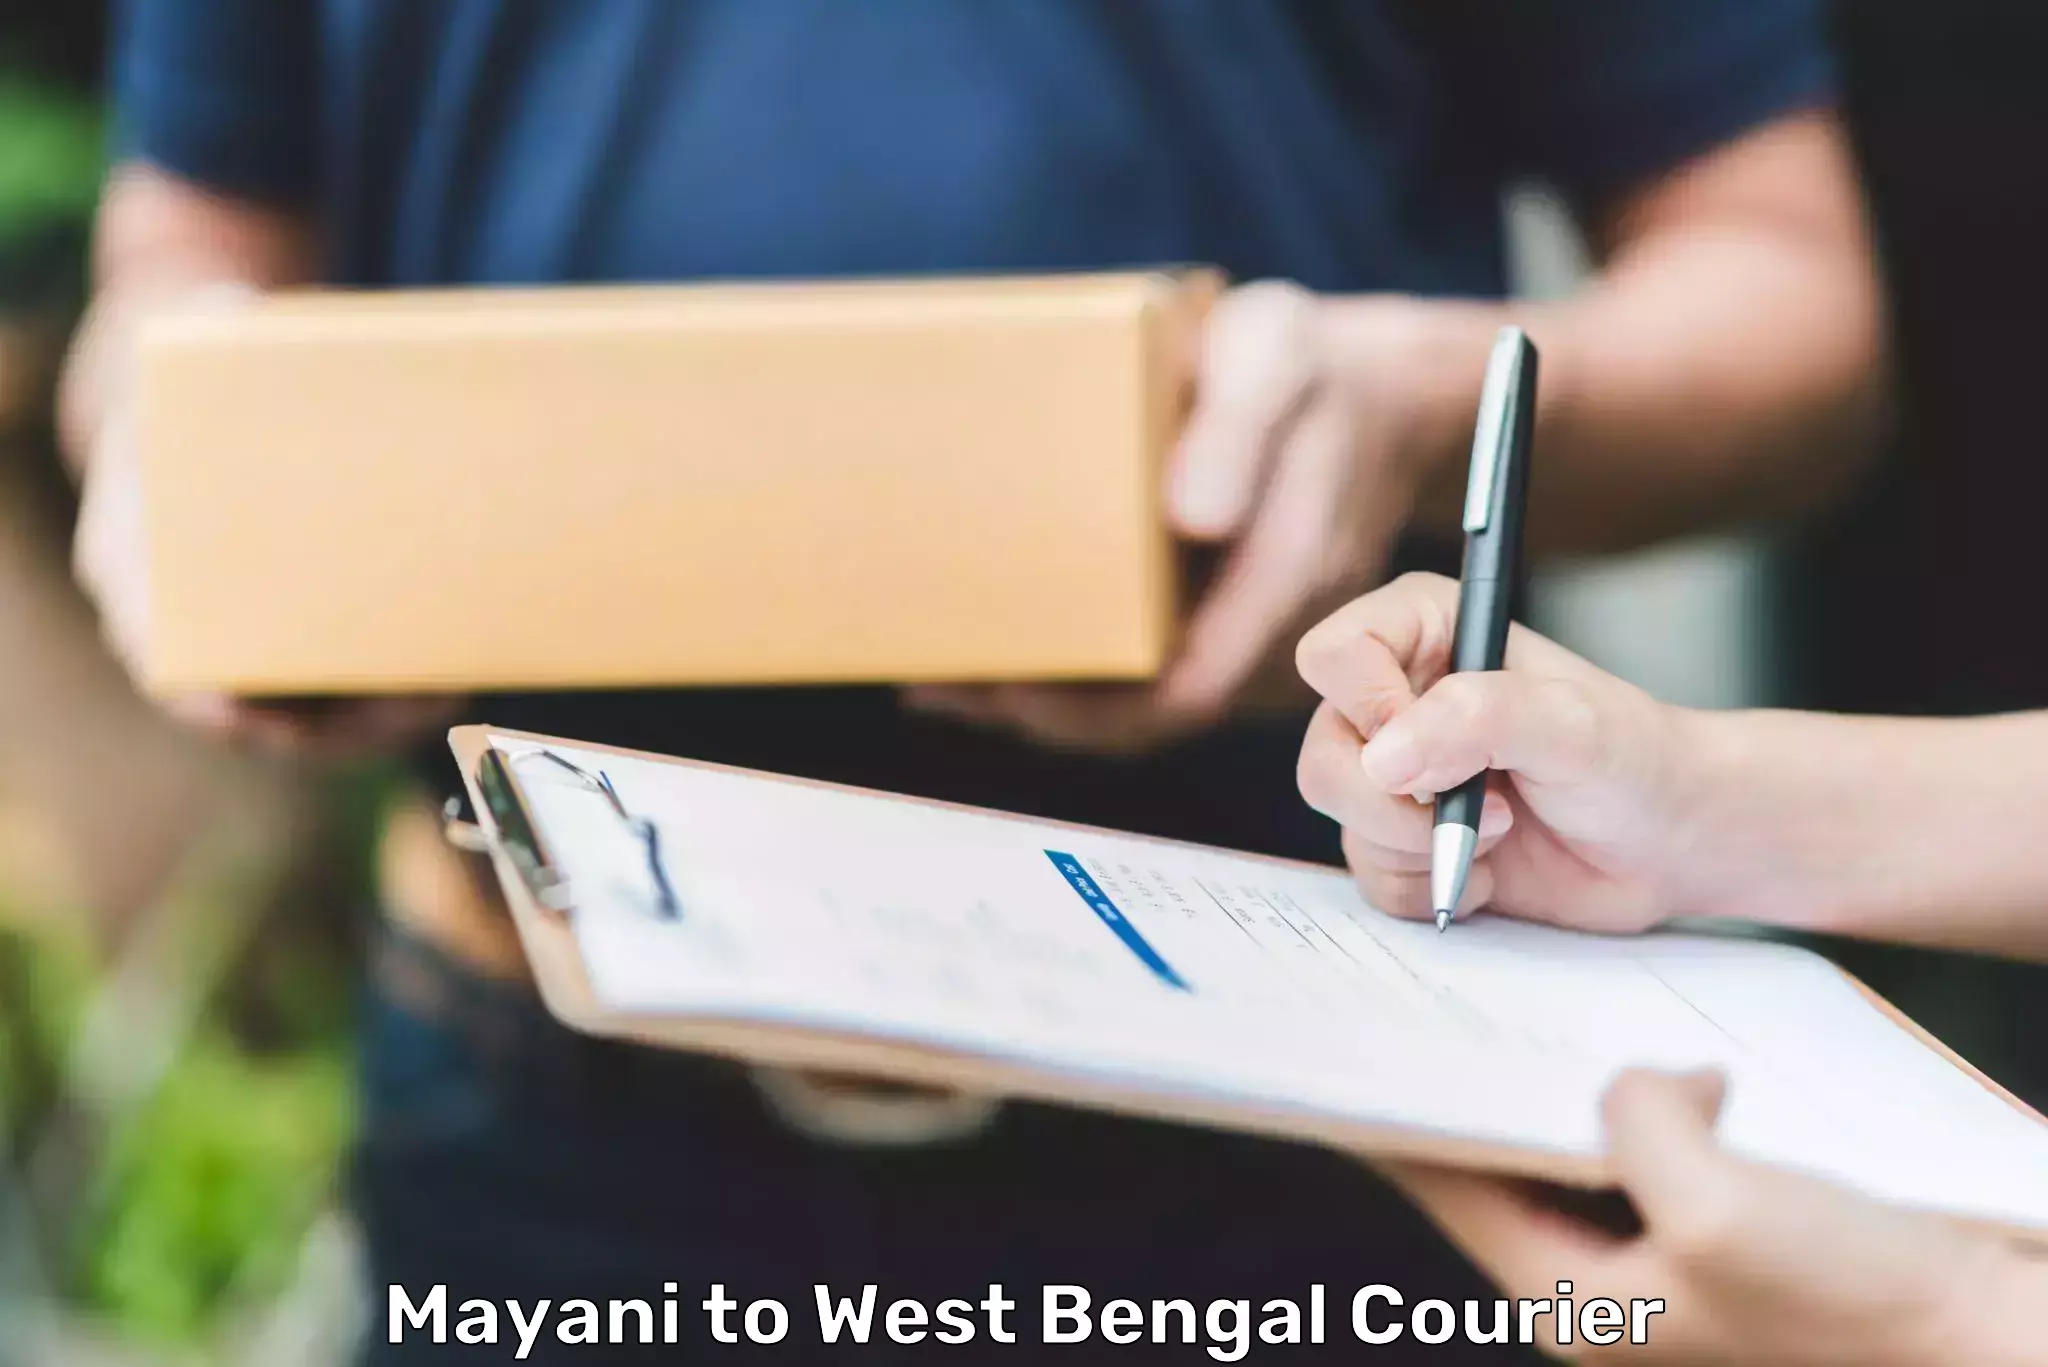 Courier service comparison Mayani to Kolkata Port